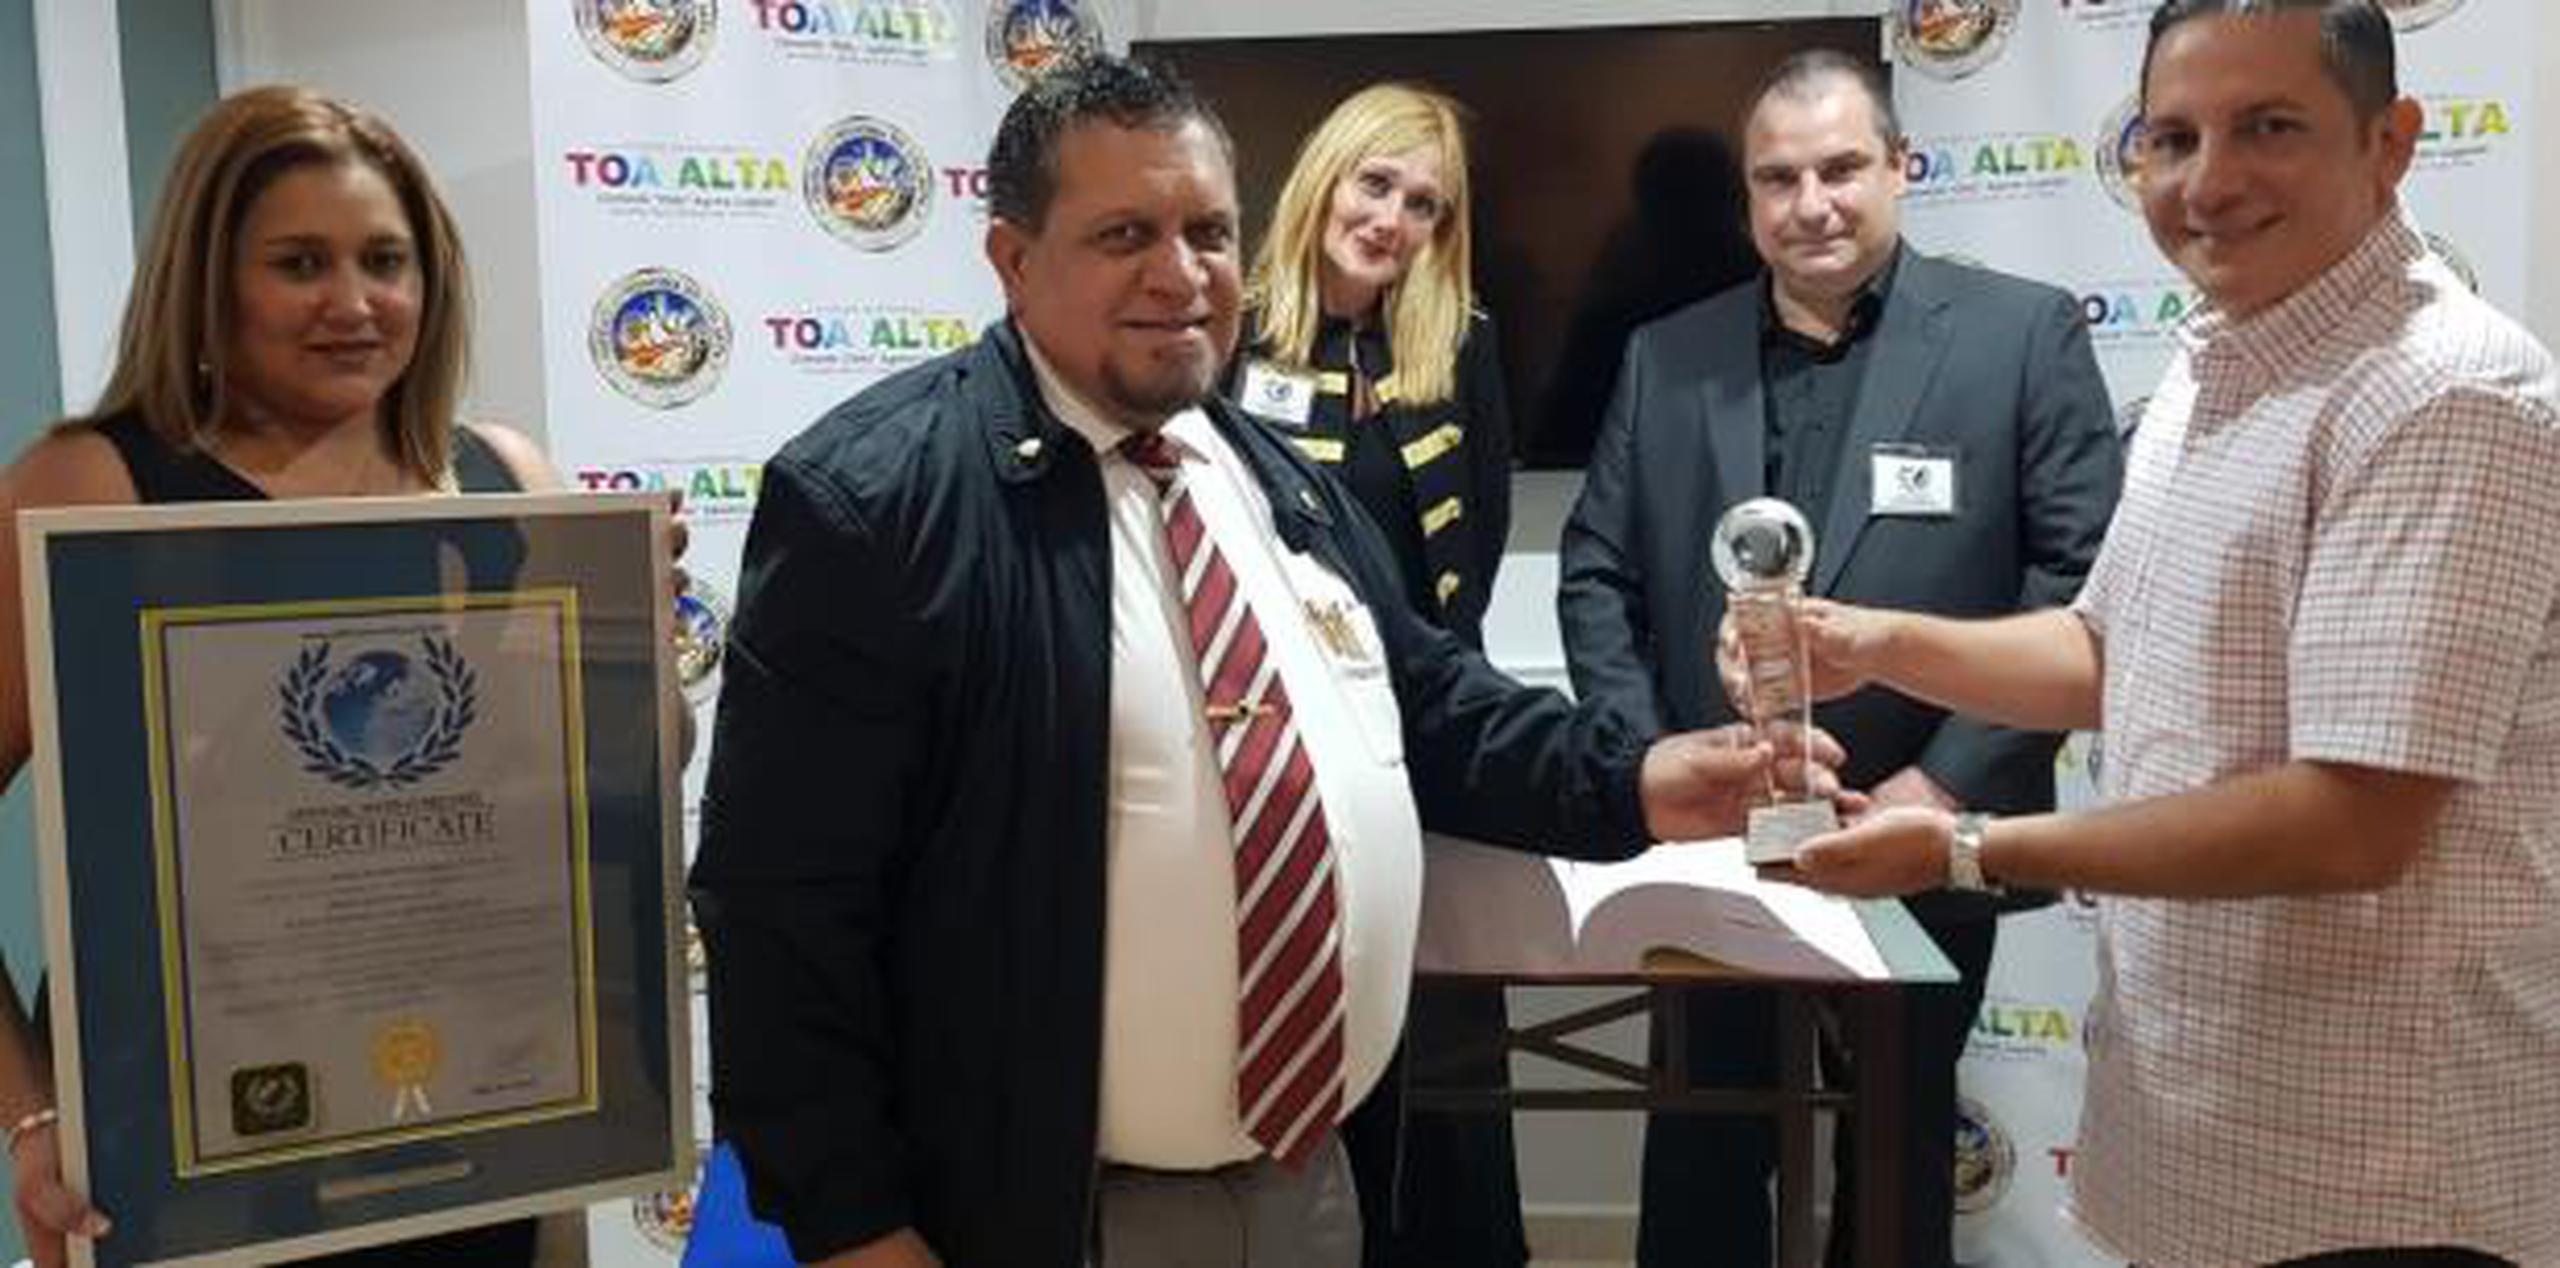 Morales (centro) recibió el premio de manos del alcalde de Toa Alta, Clemente Agosto. (Suministrada)